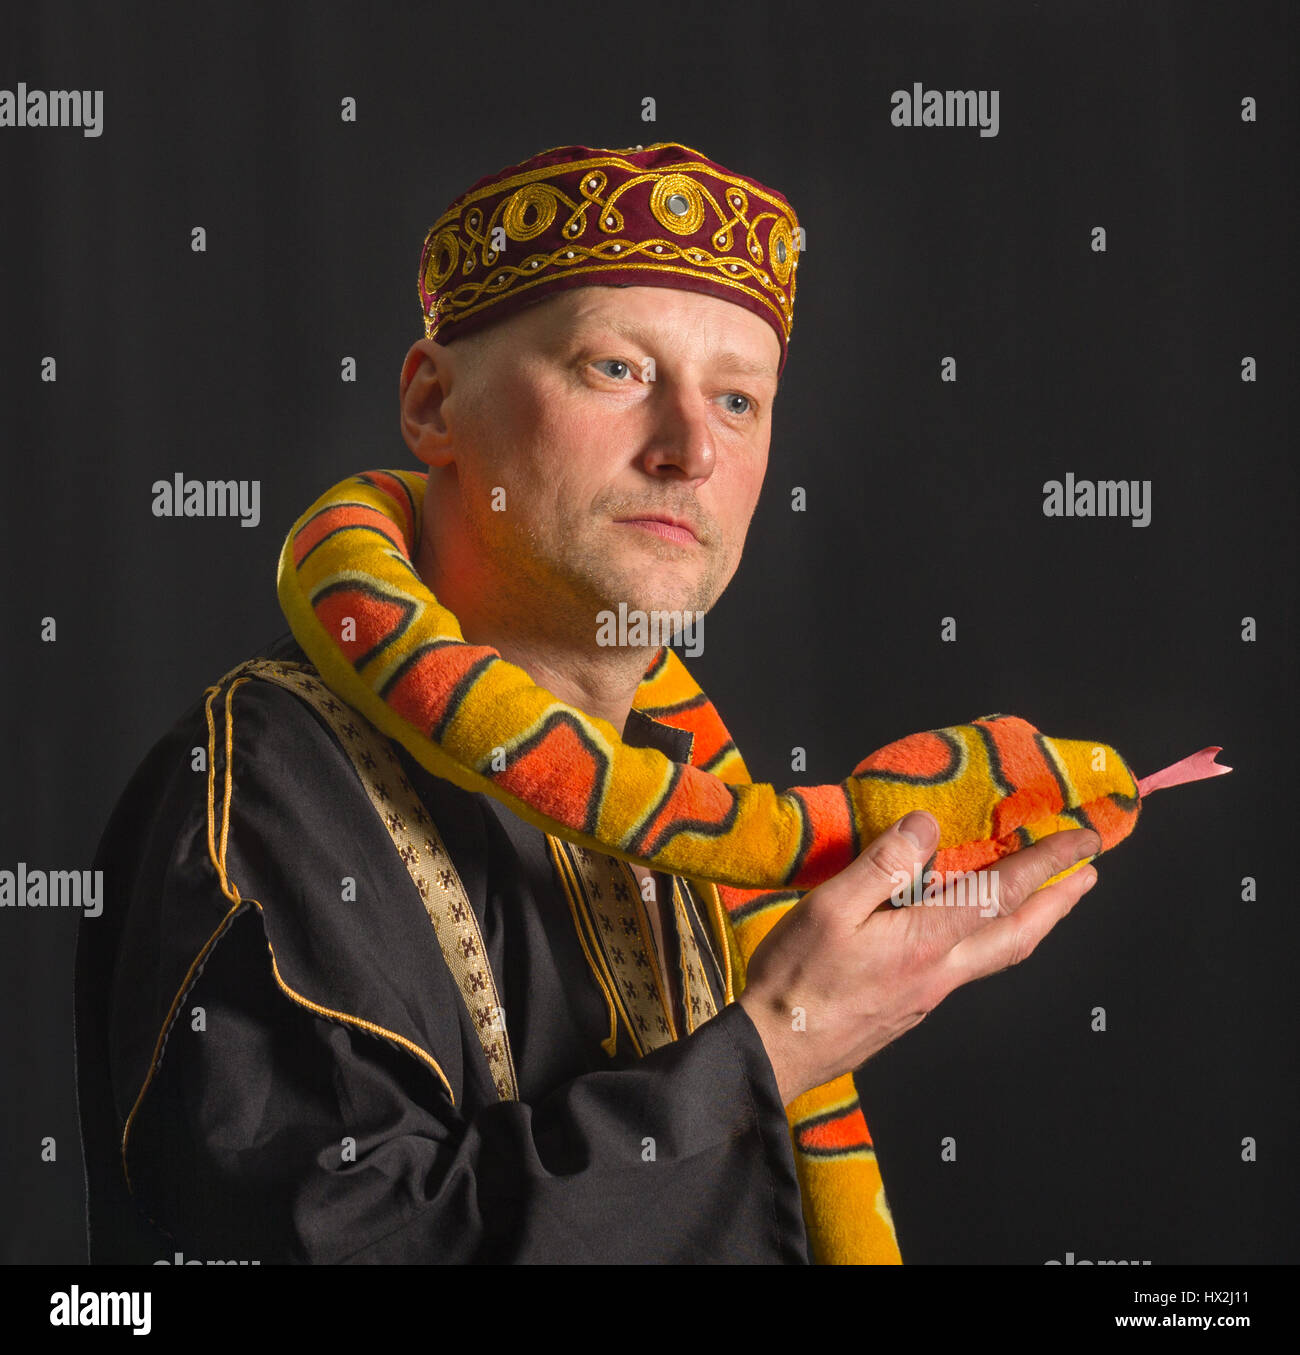 Actor con juguete serpiente sobre un fondo negro. Foto de stock